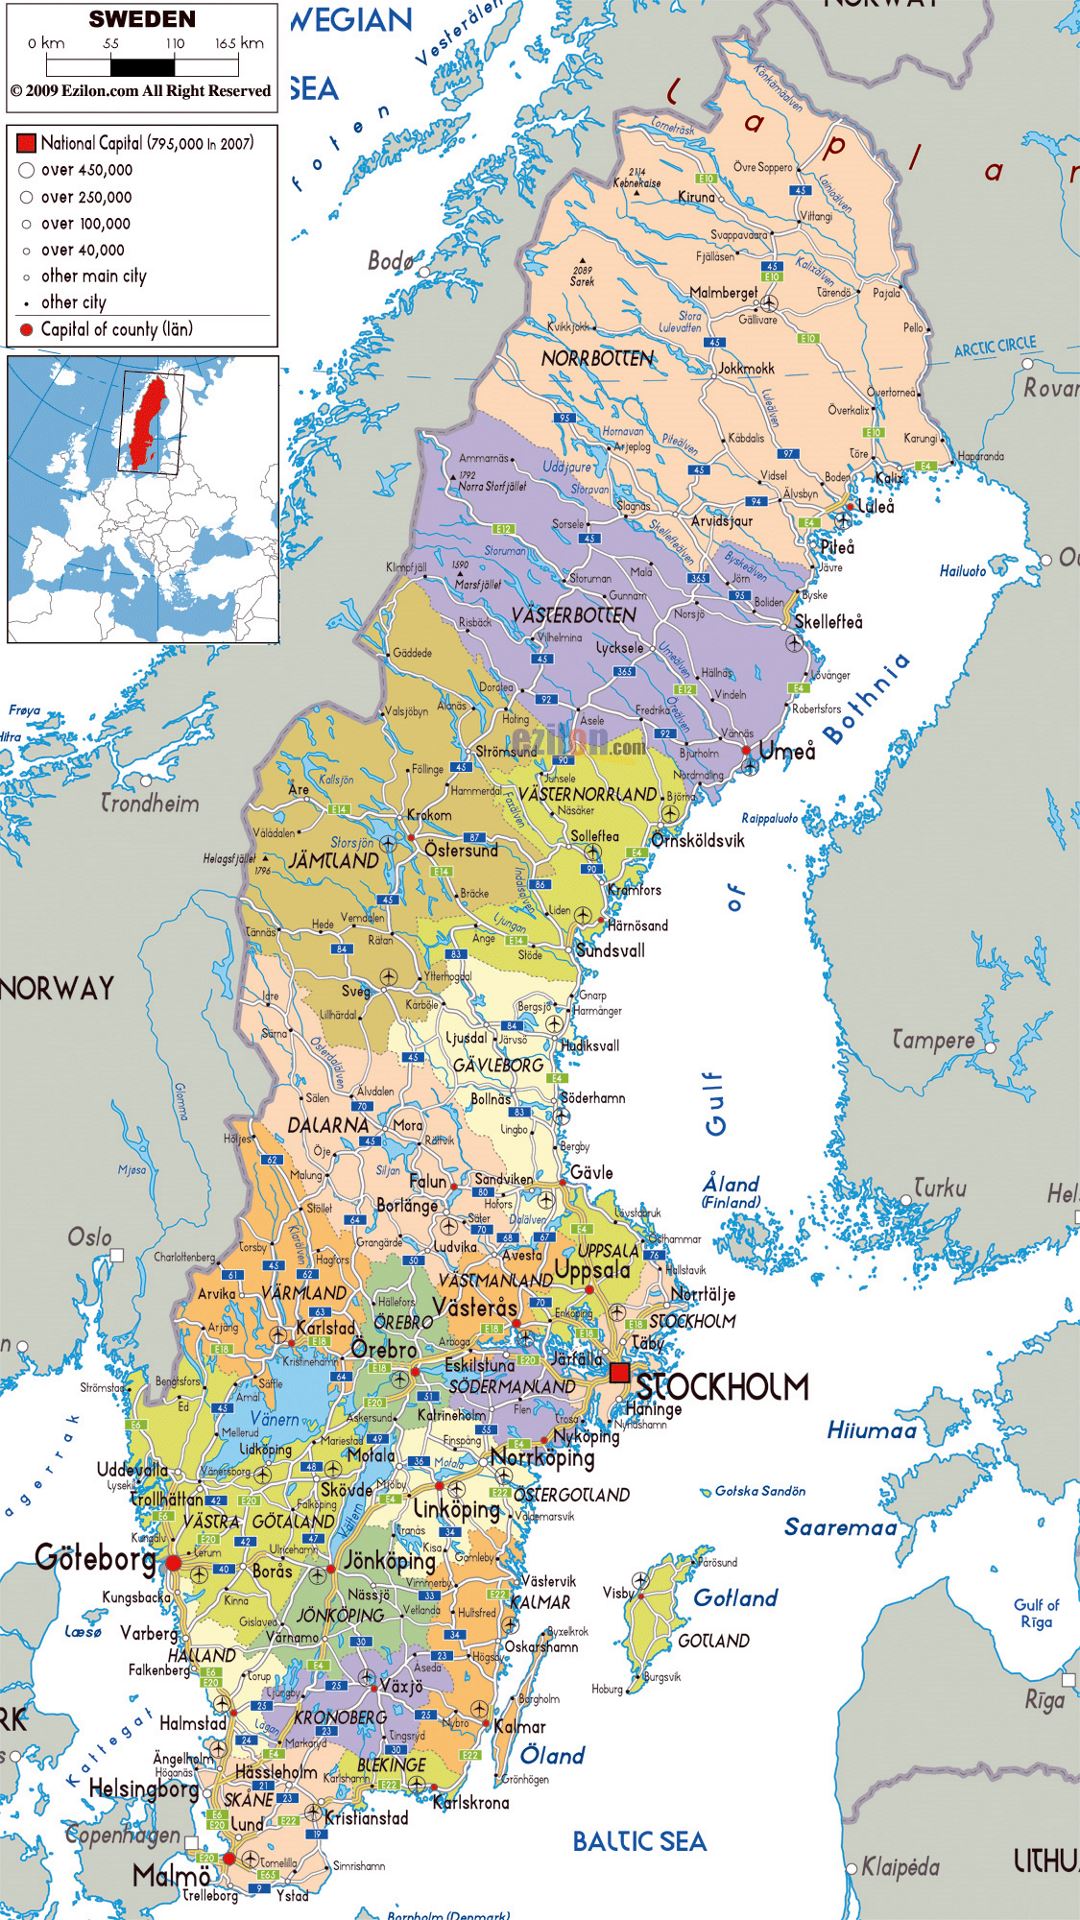 Grande mapa político y administrativo de Suecia con carreteras, ciudades y aeropuertos